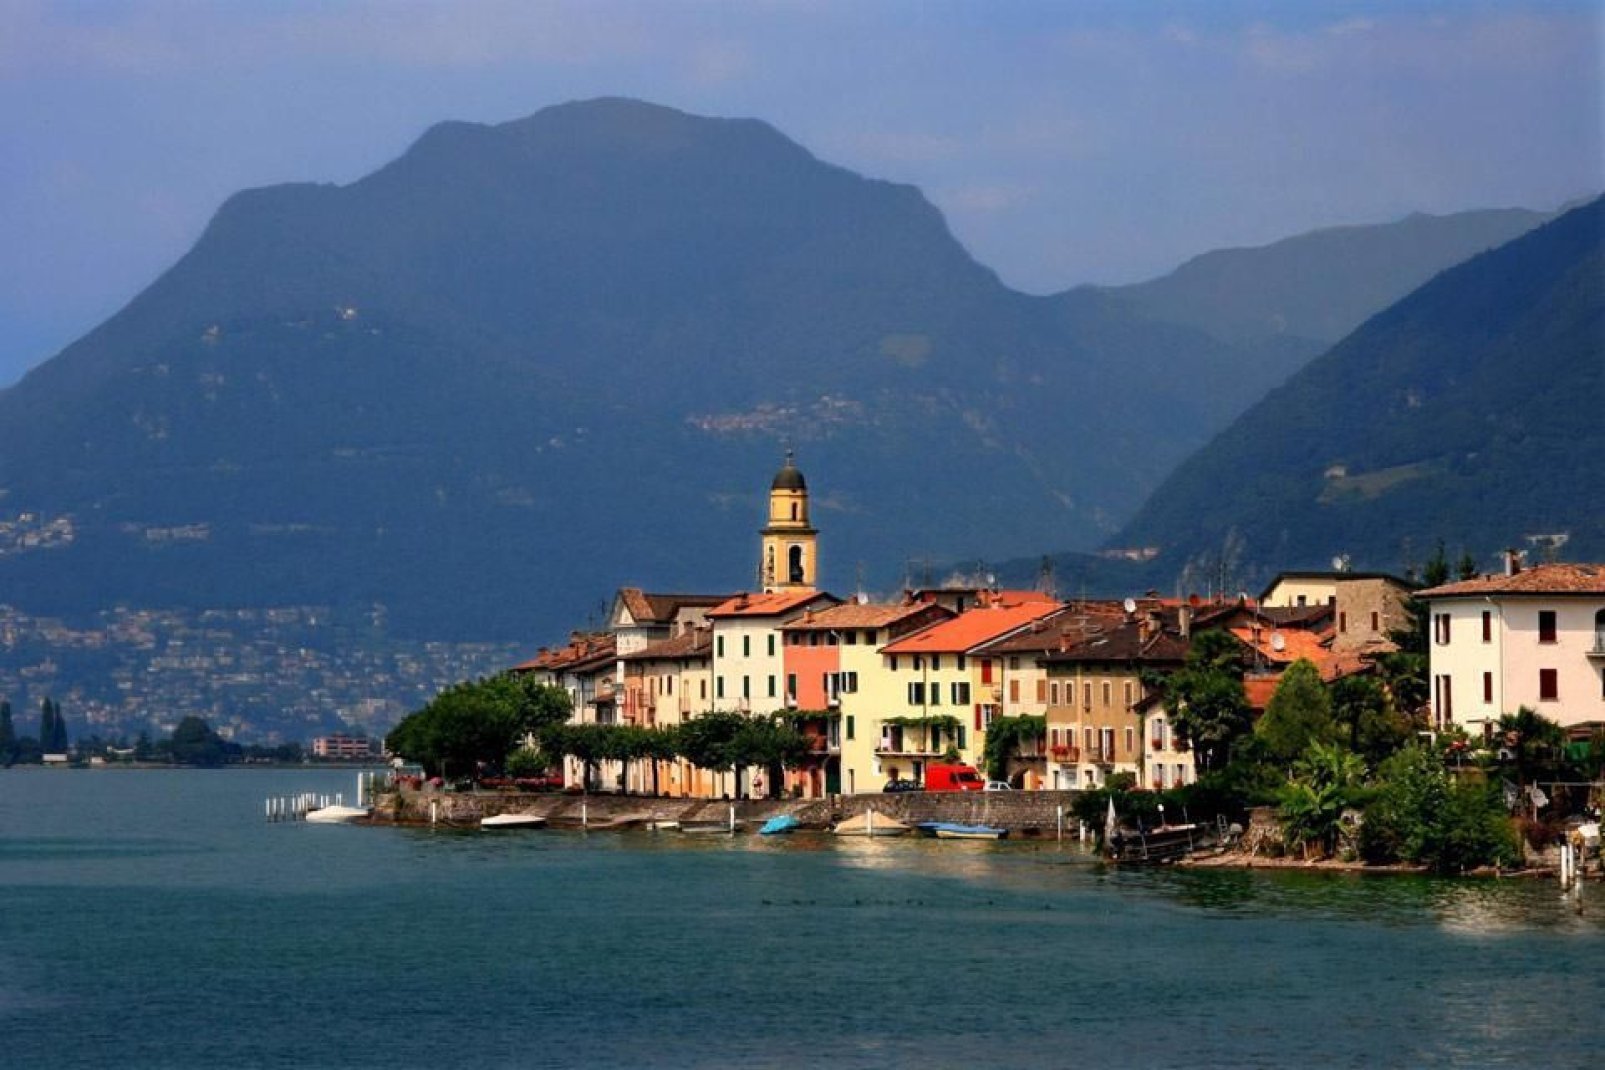 Die Stadt Lugano mit ihren farbenprächtigen Häusern ist von einem typisch italienischen Flair durchdrungen. Die offizielle Landessprache dieses Kantons ist Italienisch!